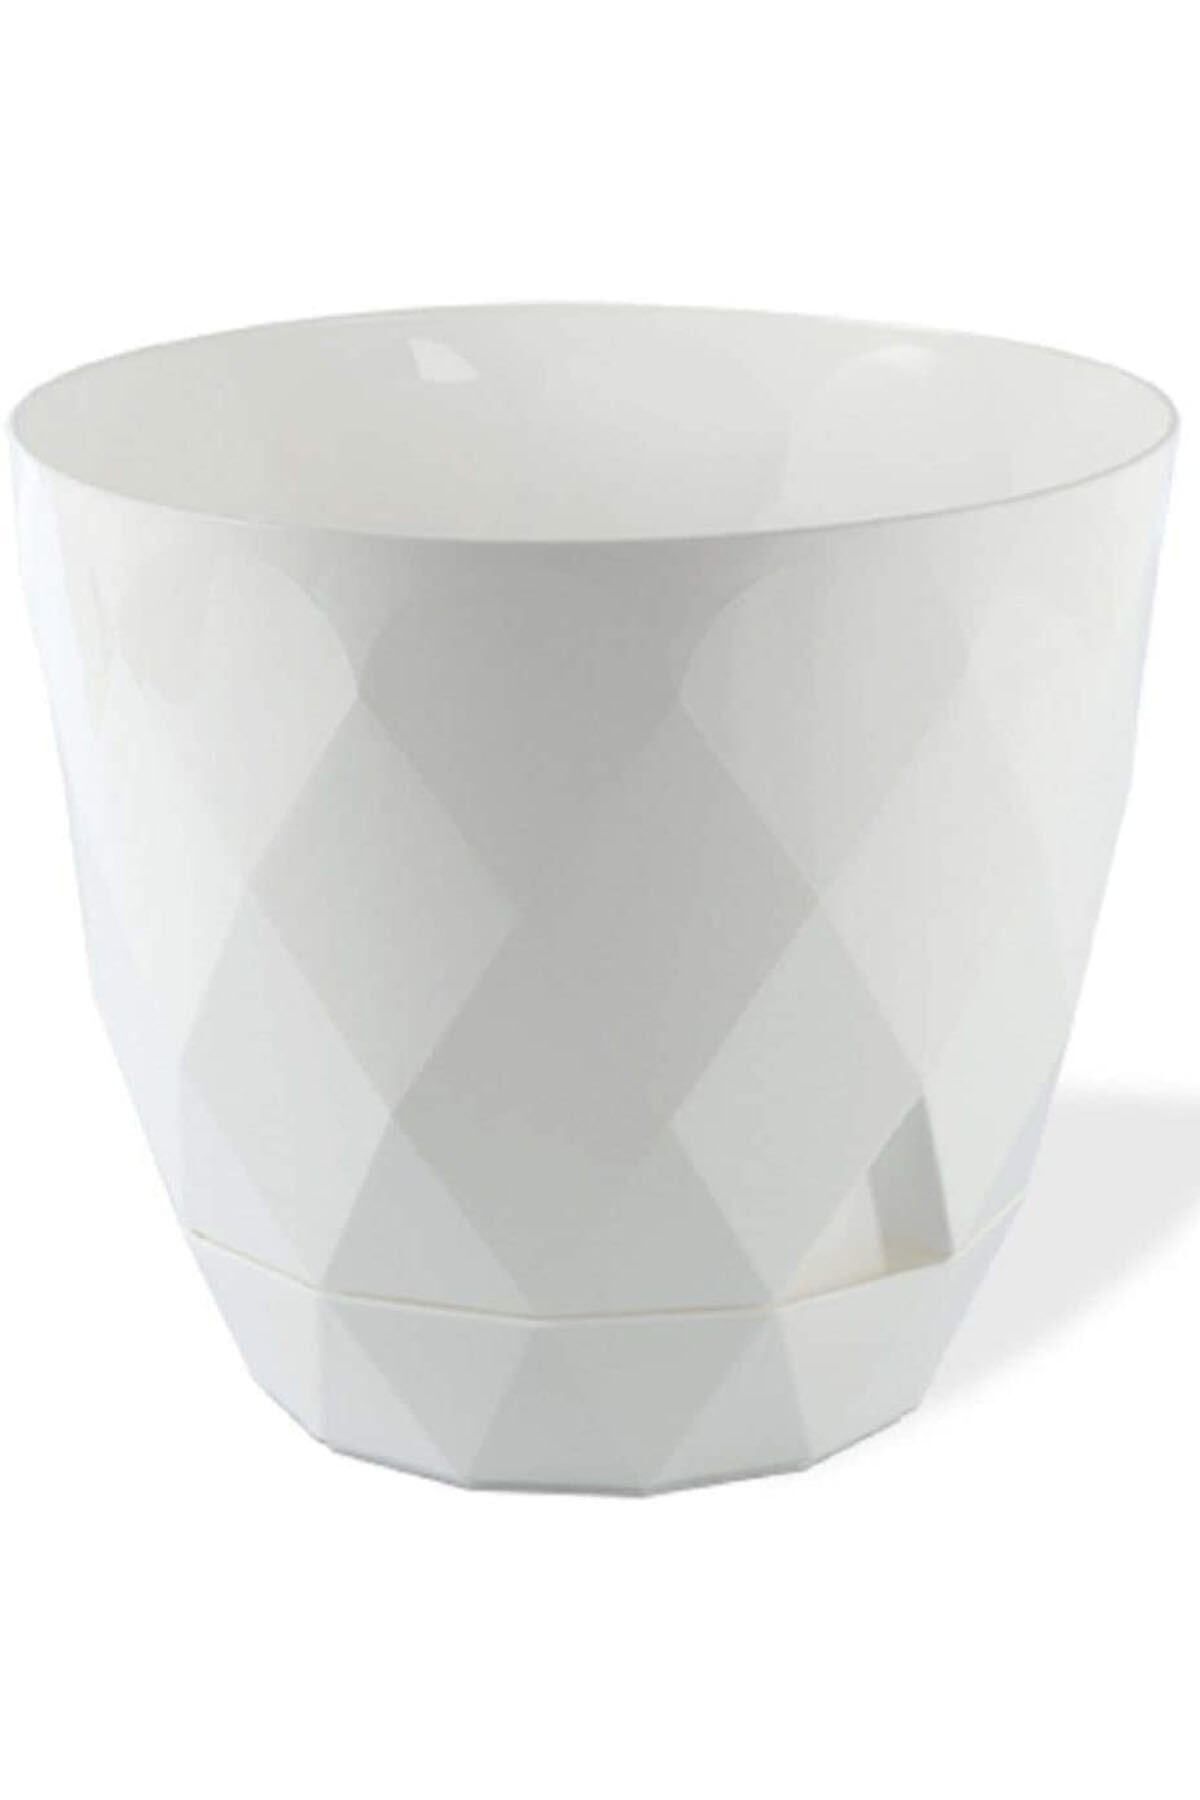 ToXA Geometrik Desenli Tabaklı 17,5x15,3 cm 2.4 lt No 3 Orta Boy Dekoratif Plastik Saksı Beyaz